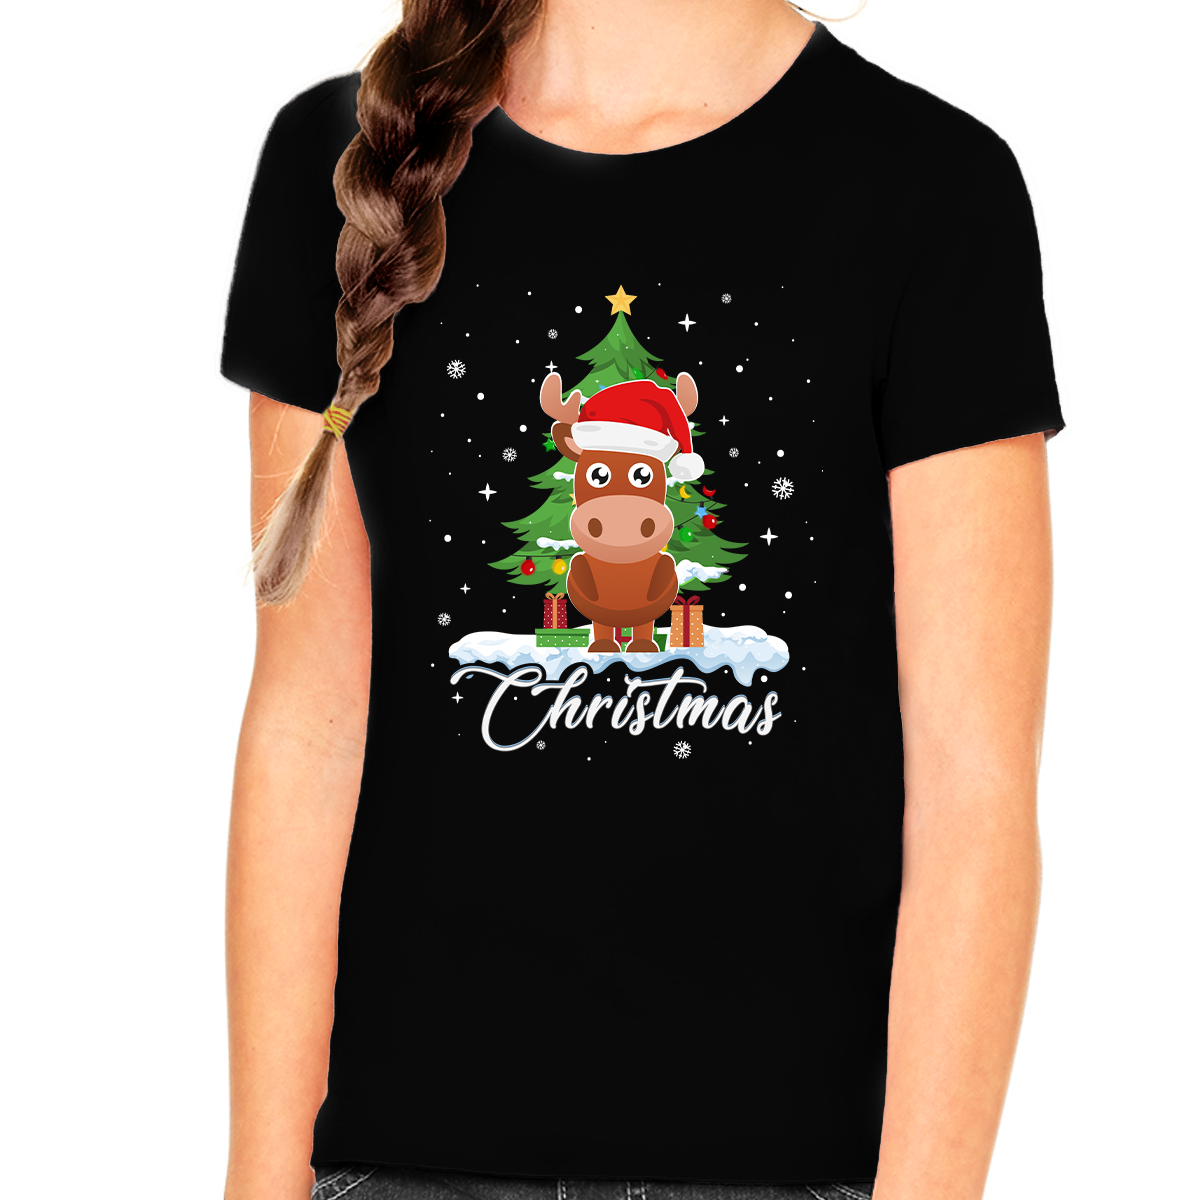 Girls Christmas Shirt Christmas Outfits for Girls Cute Moose Santa Christmas Shirts for Kids